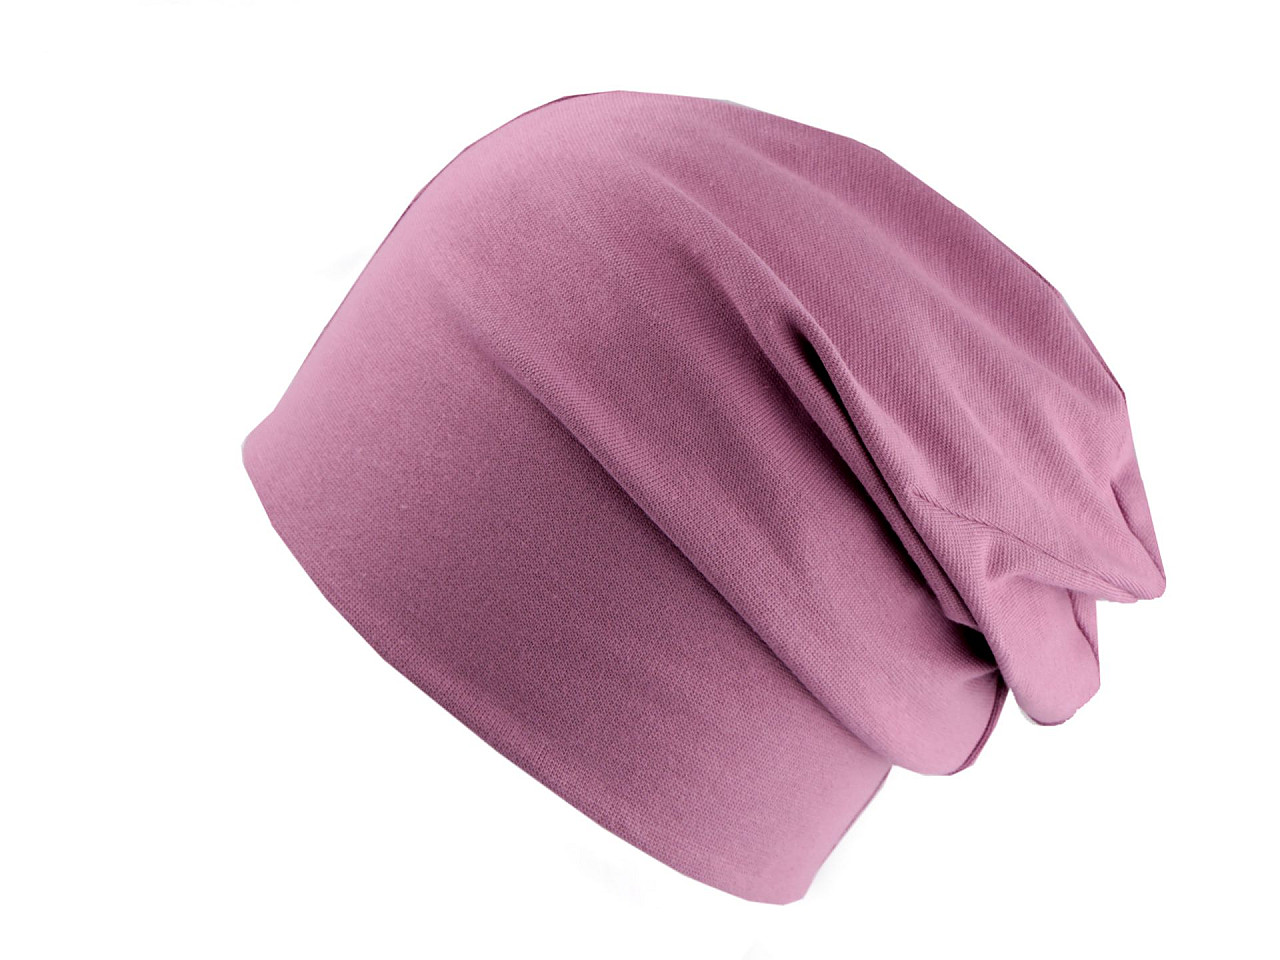 Pălărie unisex din bumbac, roz vechi, 1 buc